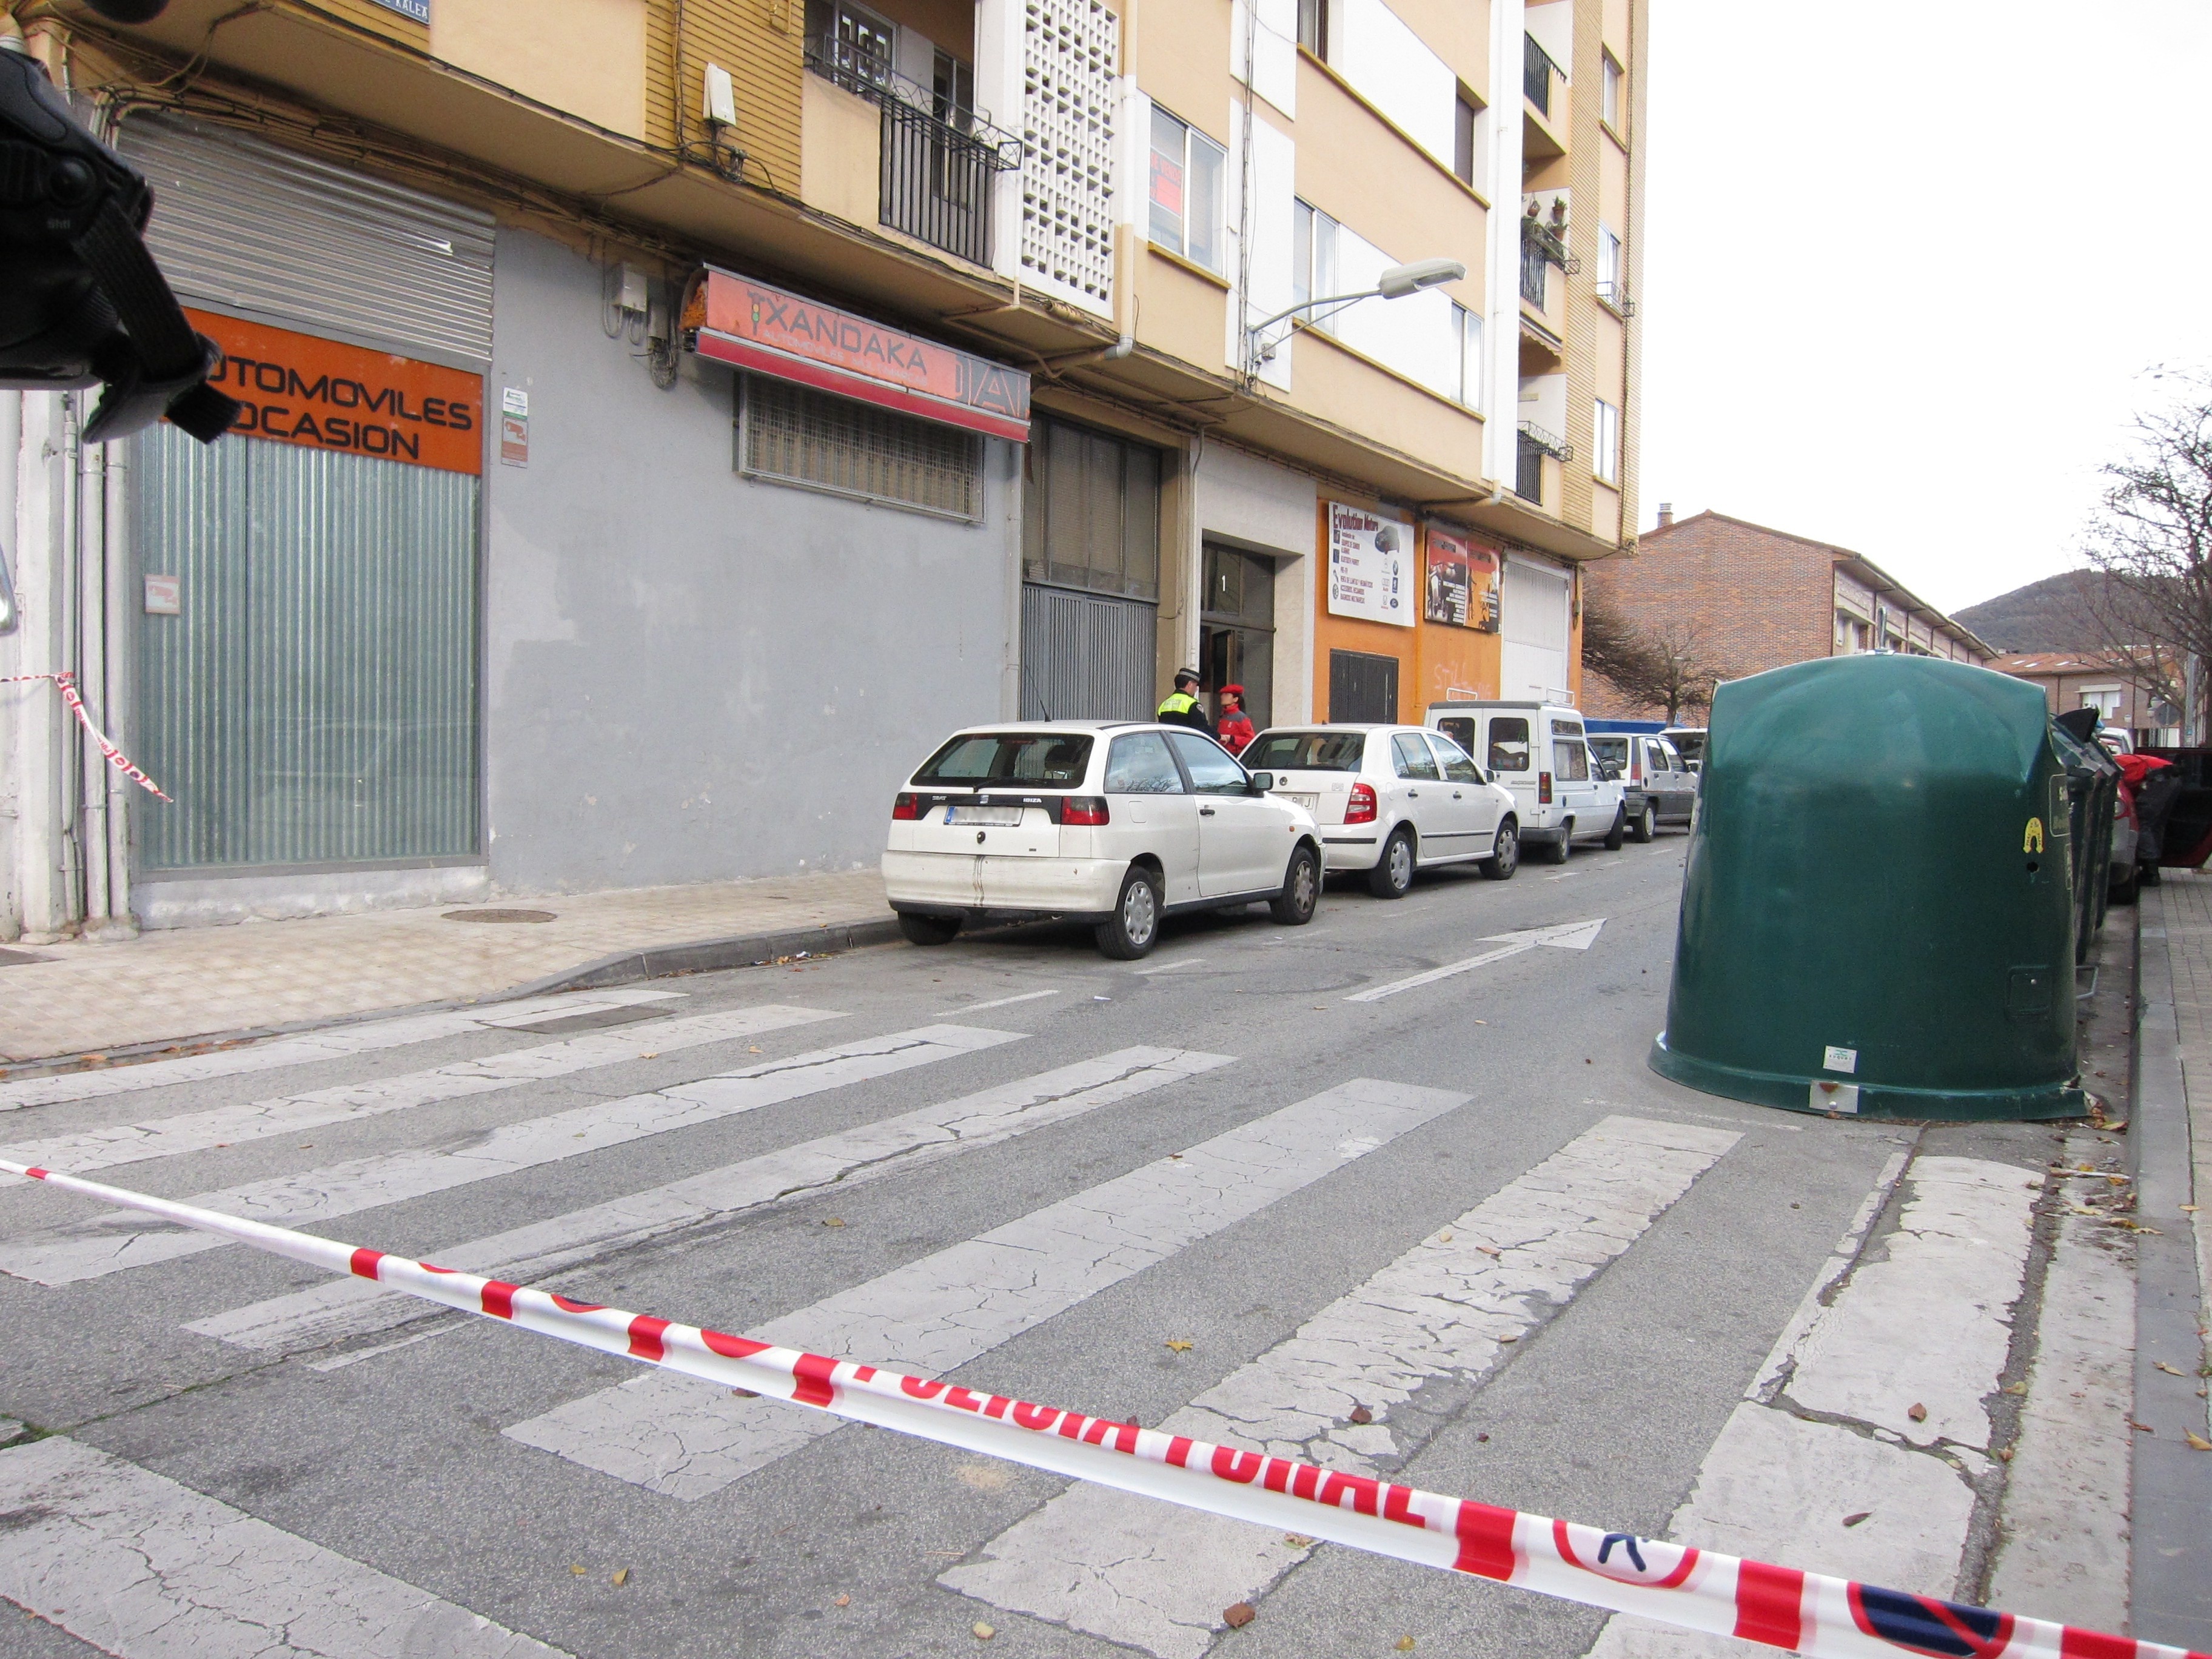 Ayuntamiento de Burlada (Navarra) condena la agresión contra la mujer herida por disparos y convoca una concentración